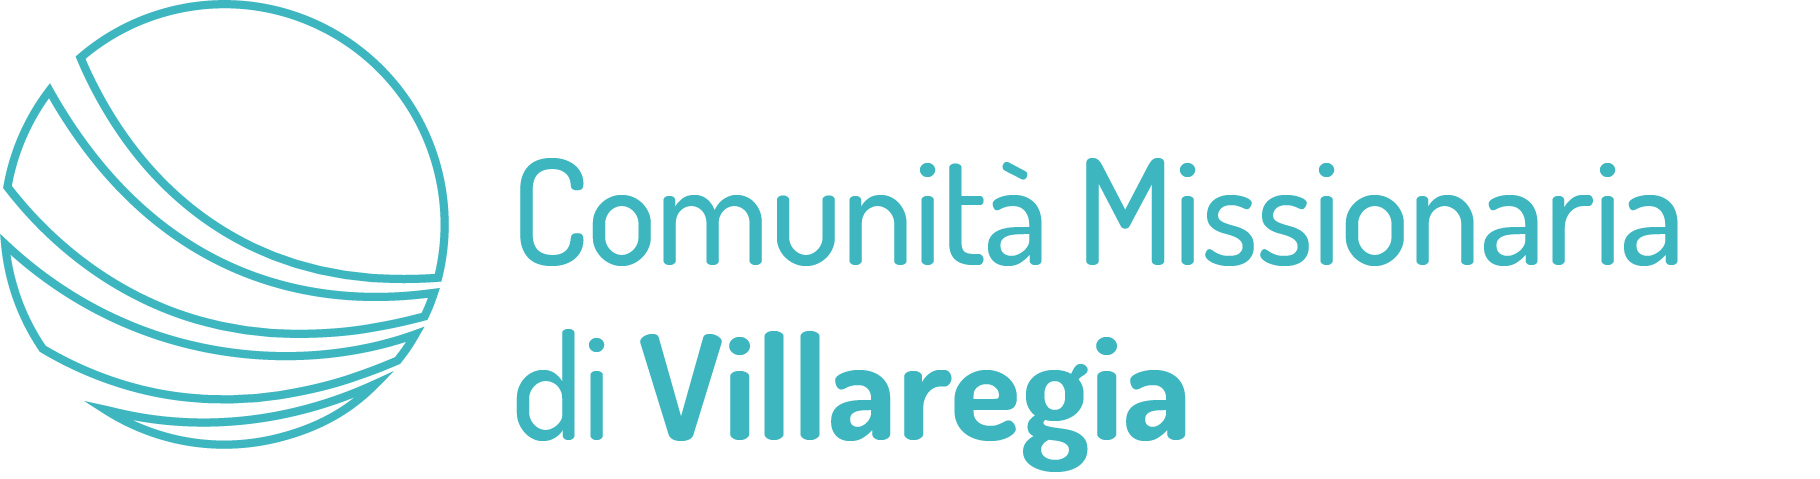 Comunità Missionaria di Villaregia - Italia